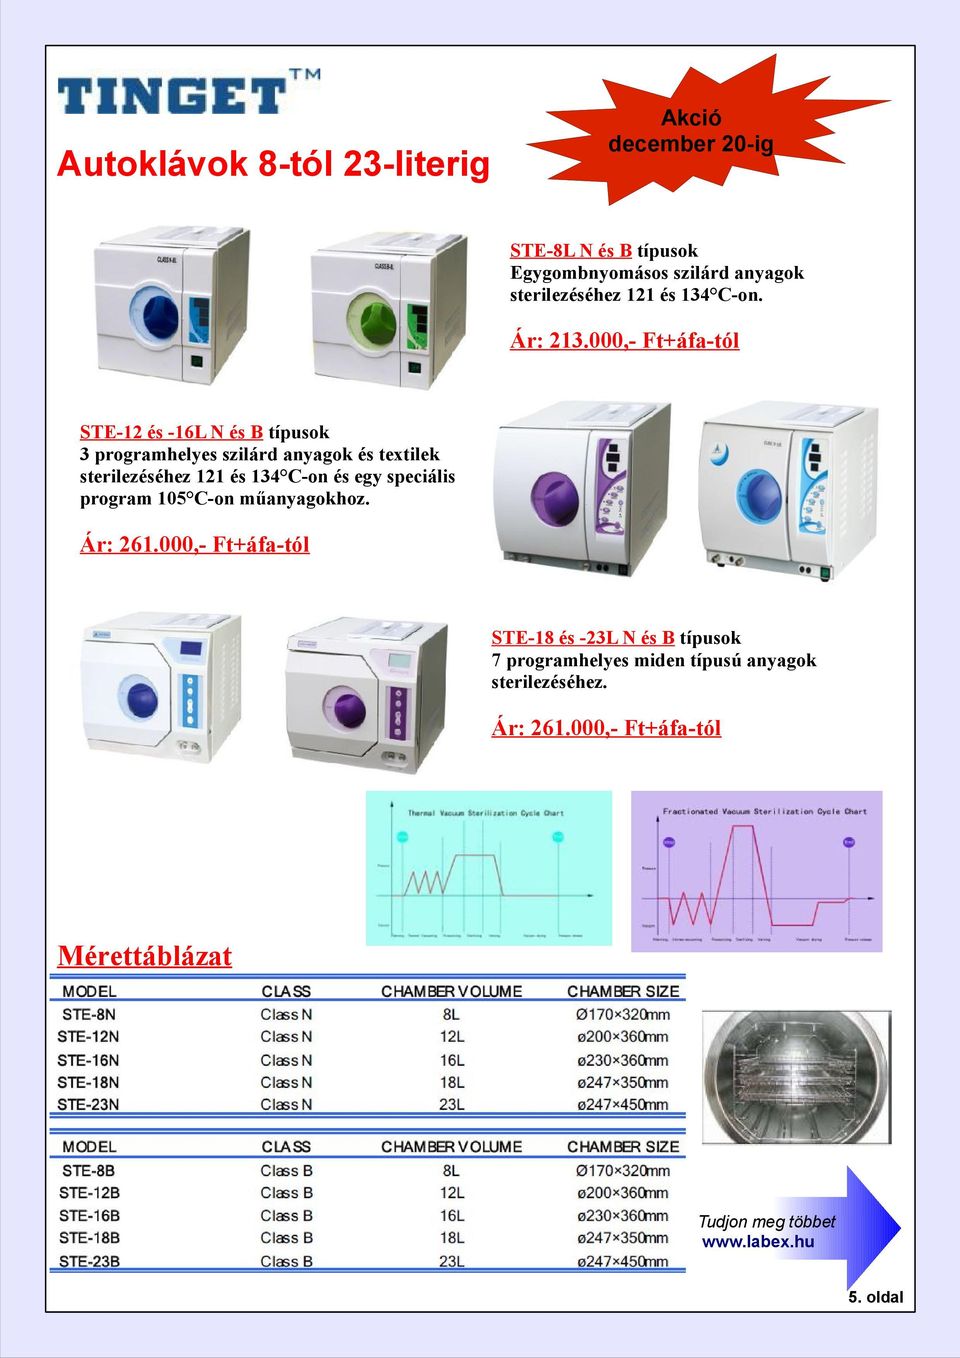 000,- Ft+áfa-tól STE-12 és -16L N és B típusok 3 programhelyes szilárd anyagok és textilek sterilezéséhez 121 és 134 C-on